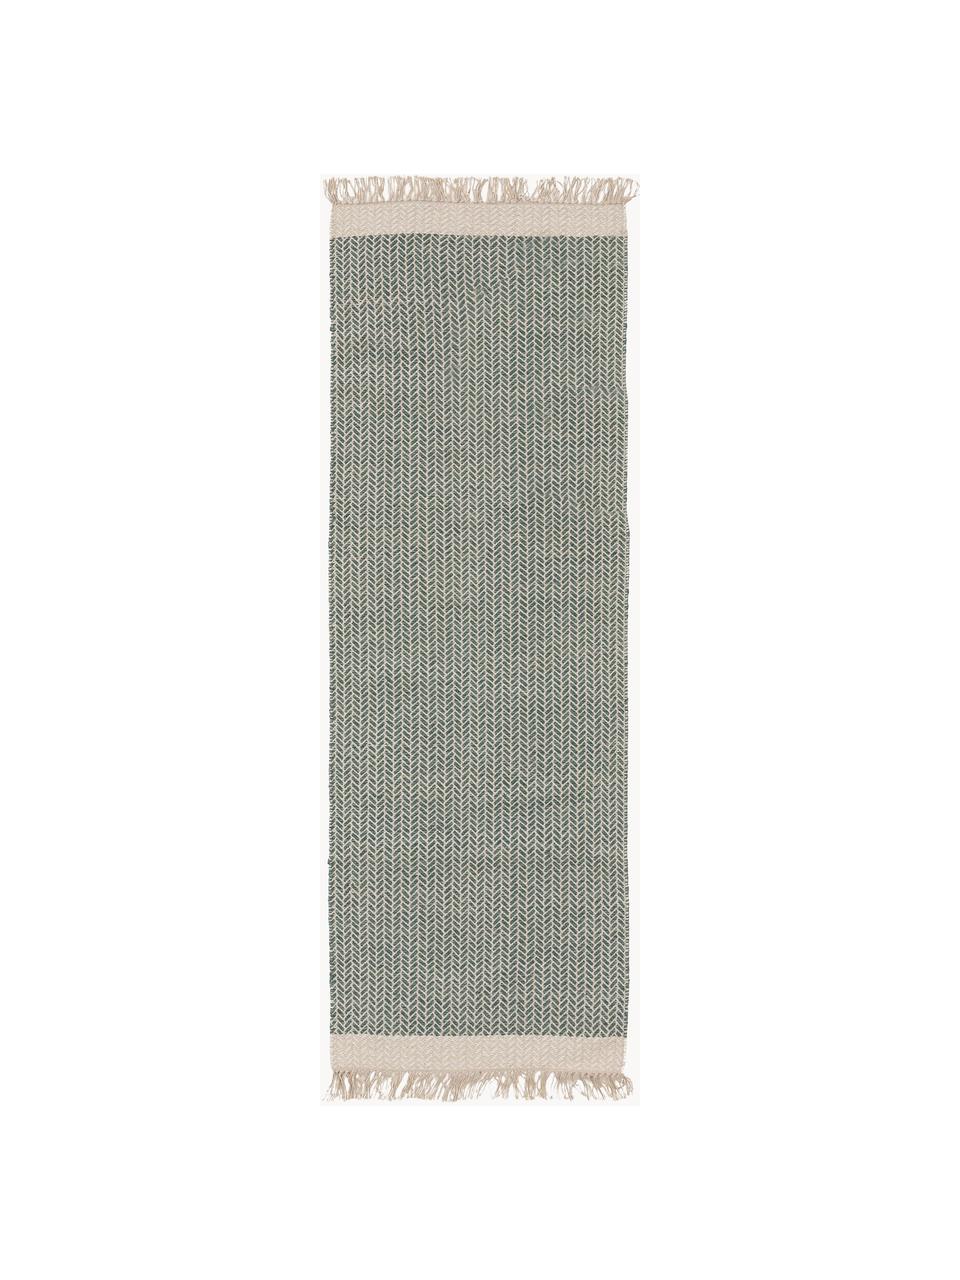 Ręcznie tkany chodnik z wełny z frędzlami Kim, 80% wełna, 20% bawełna

Włókna dywanów wełnianych mogą nieznacznie rozluźniać się w pierwszych tygodniach użytkowania, co ustępuje po pewnym czasie, Zielony, beżowy, S 70 x D 200 cm